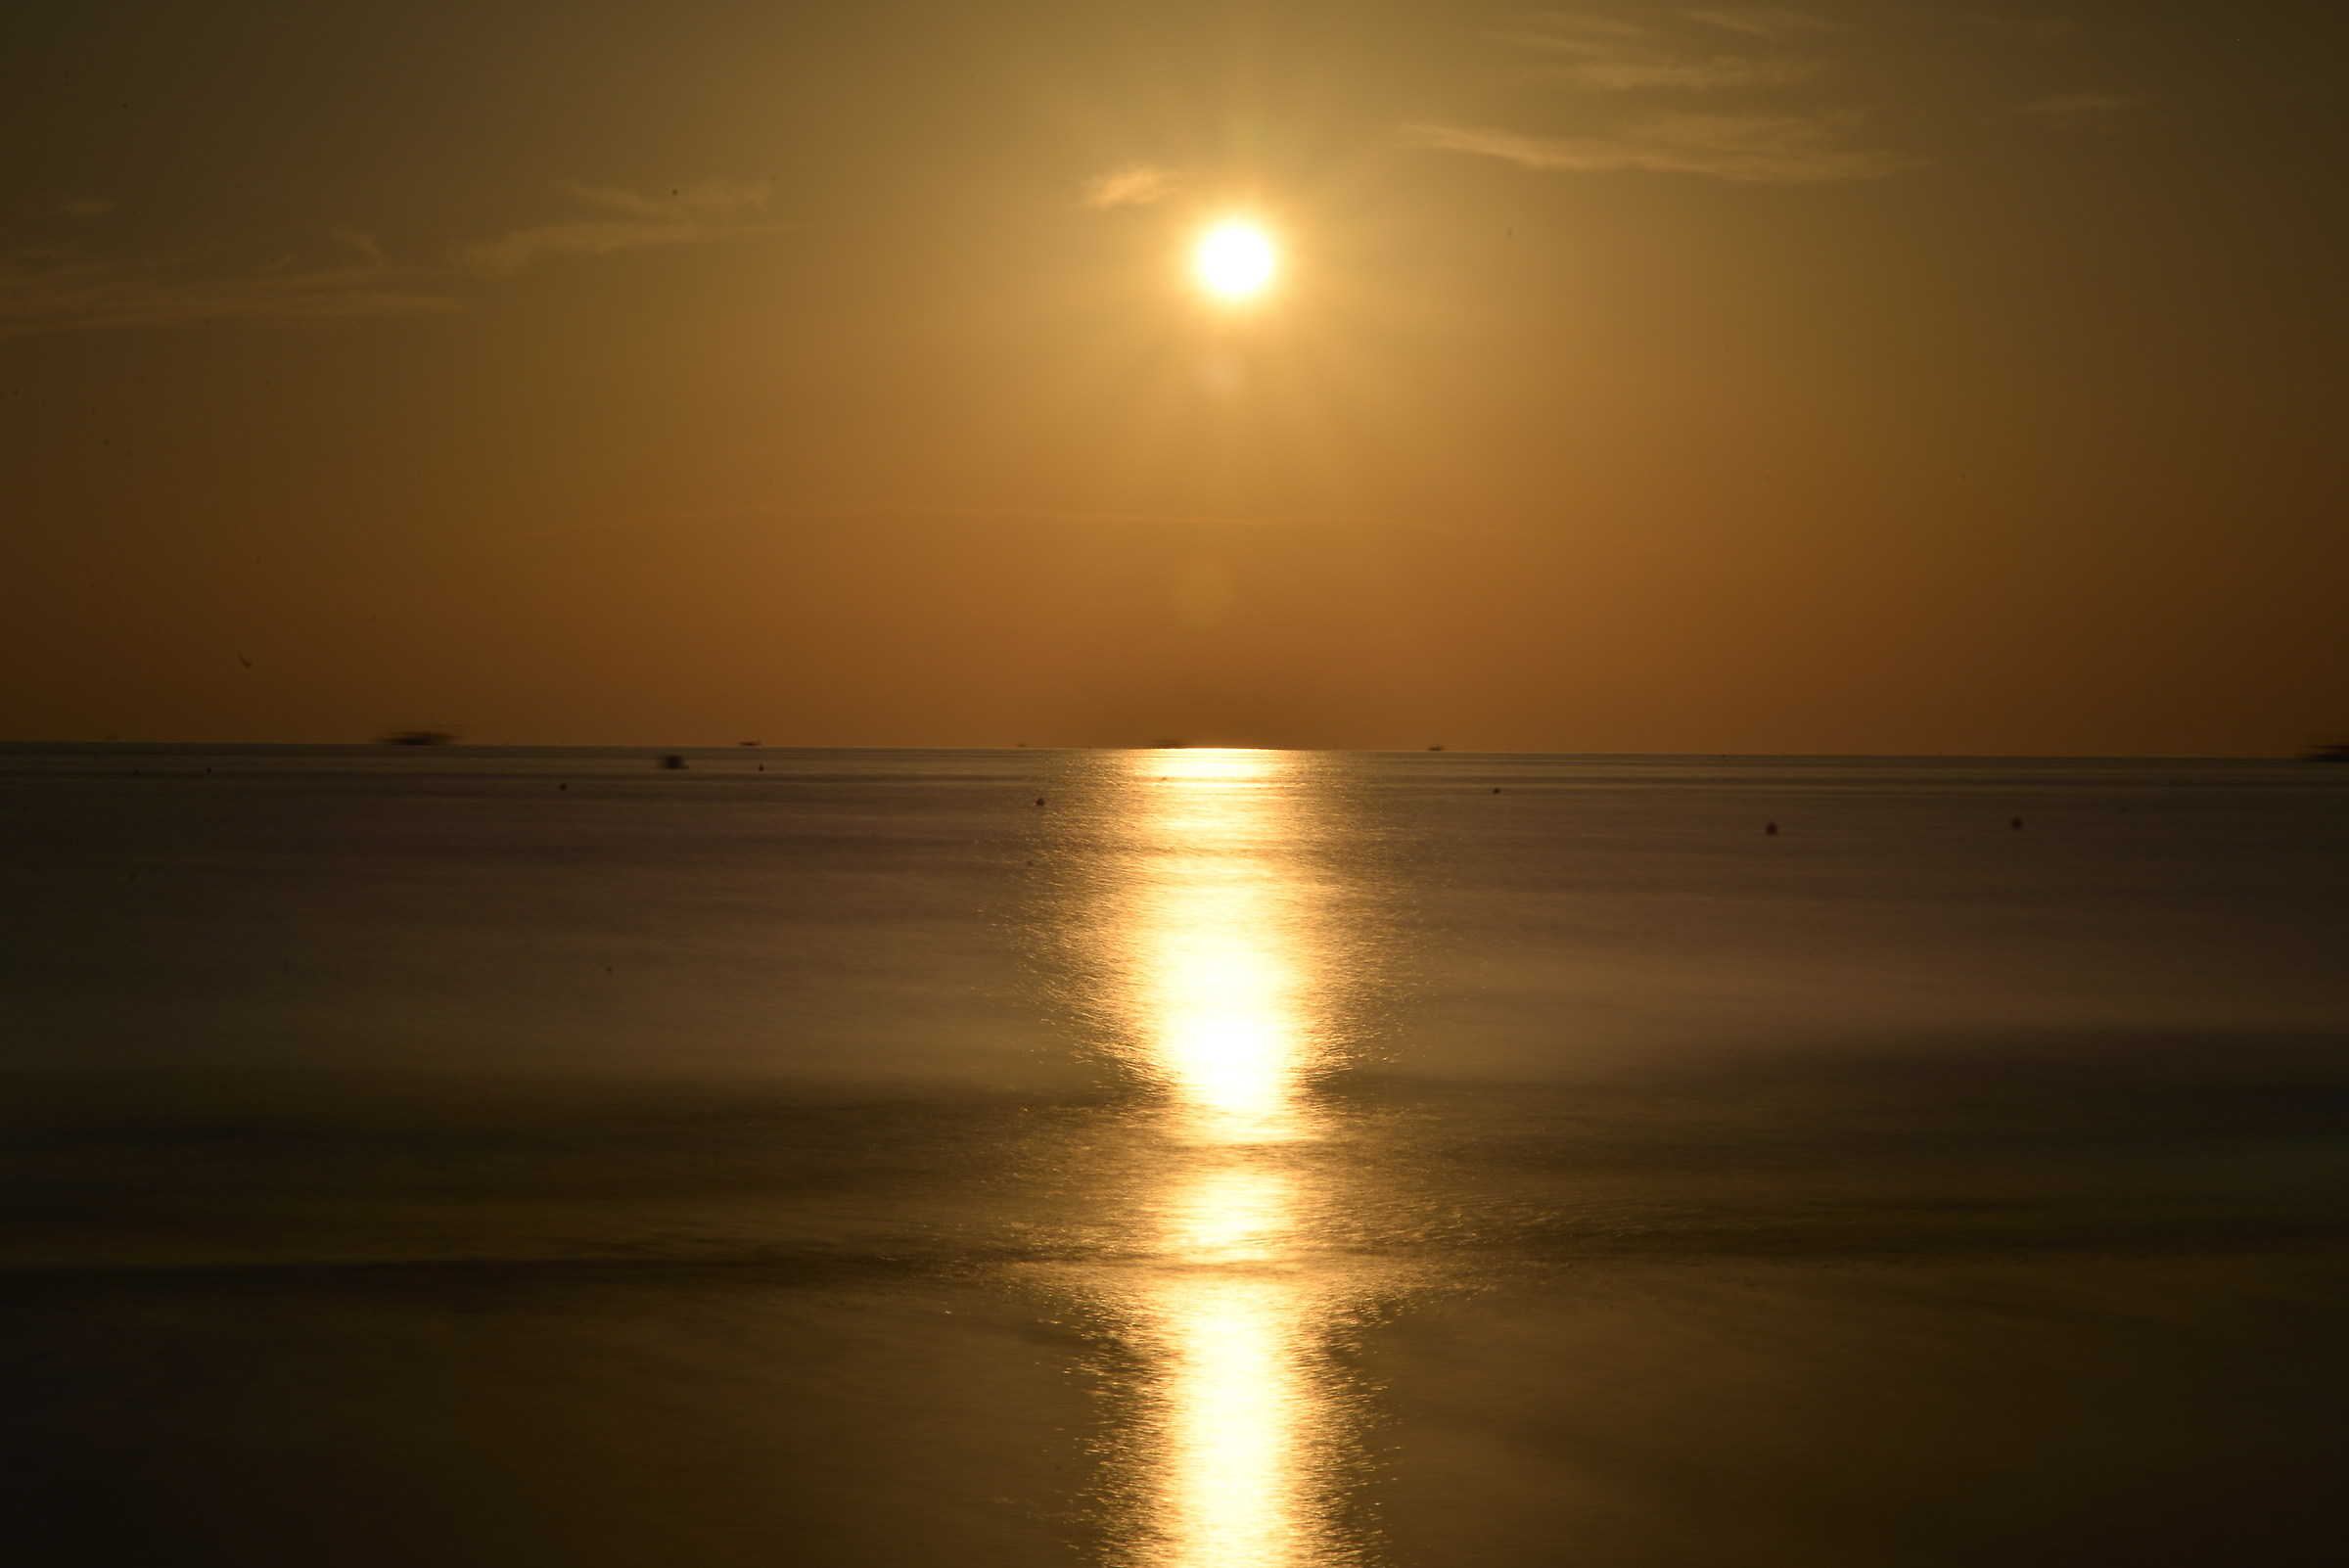 sunrise from the beach riccine...